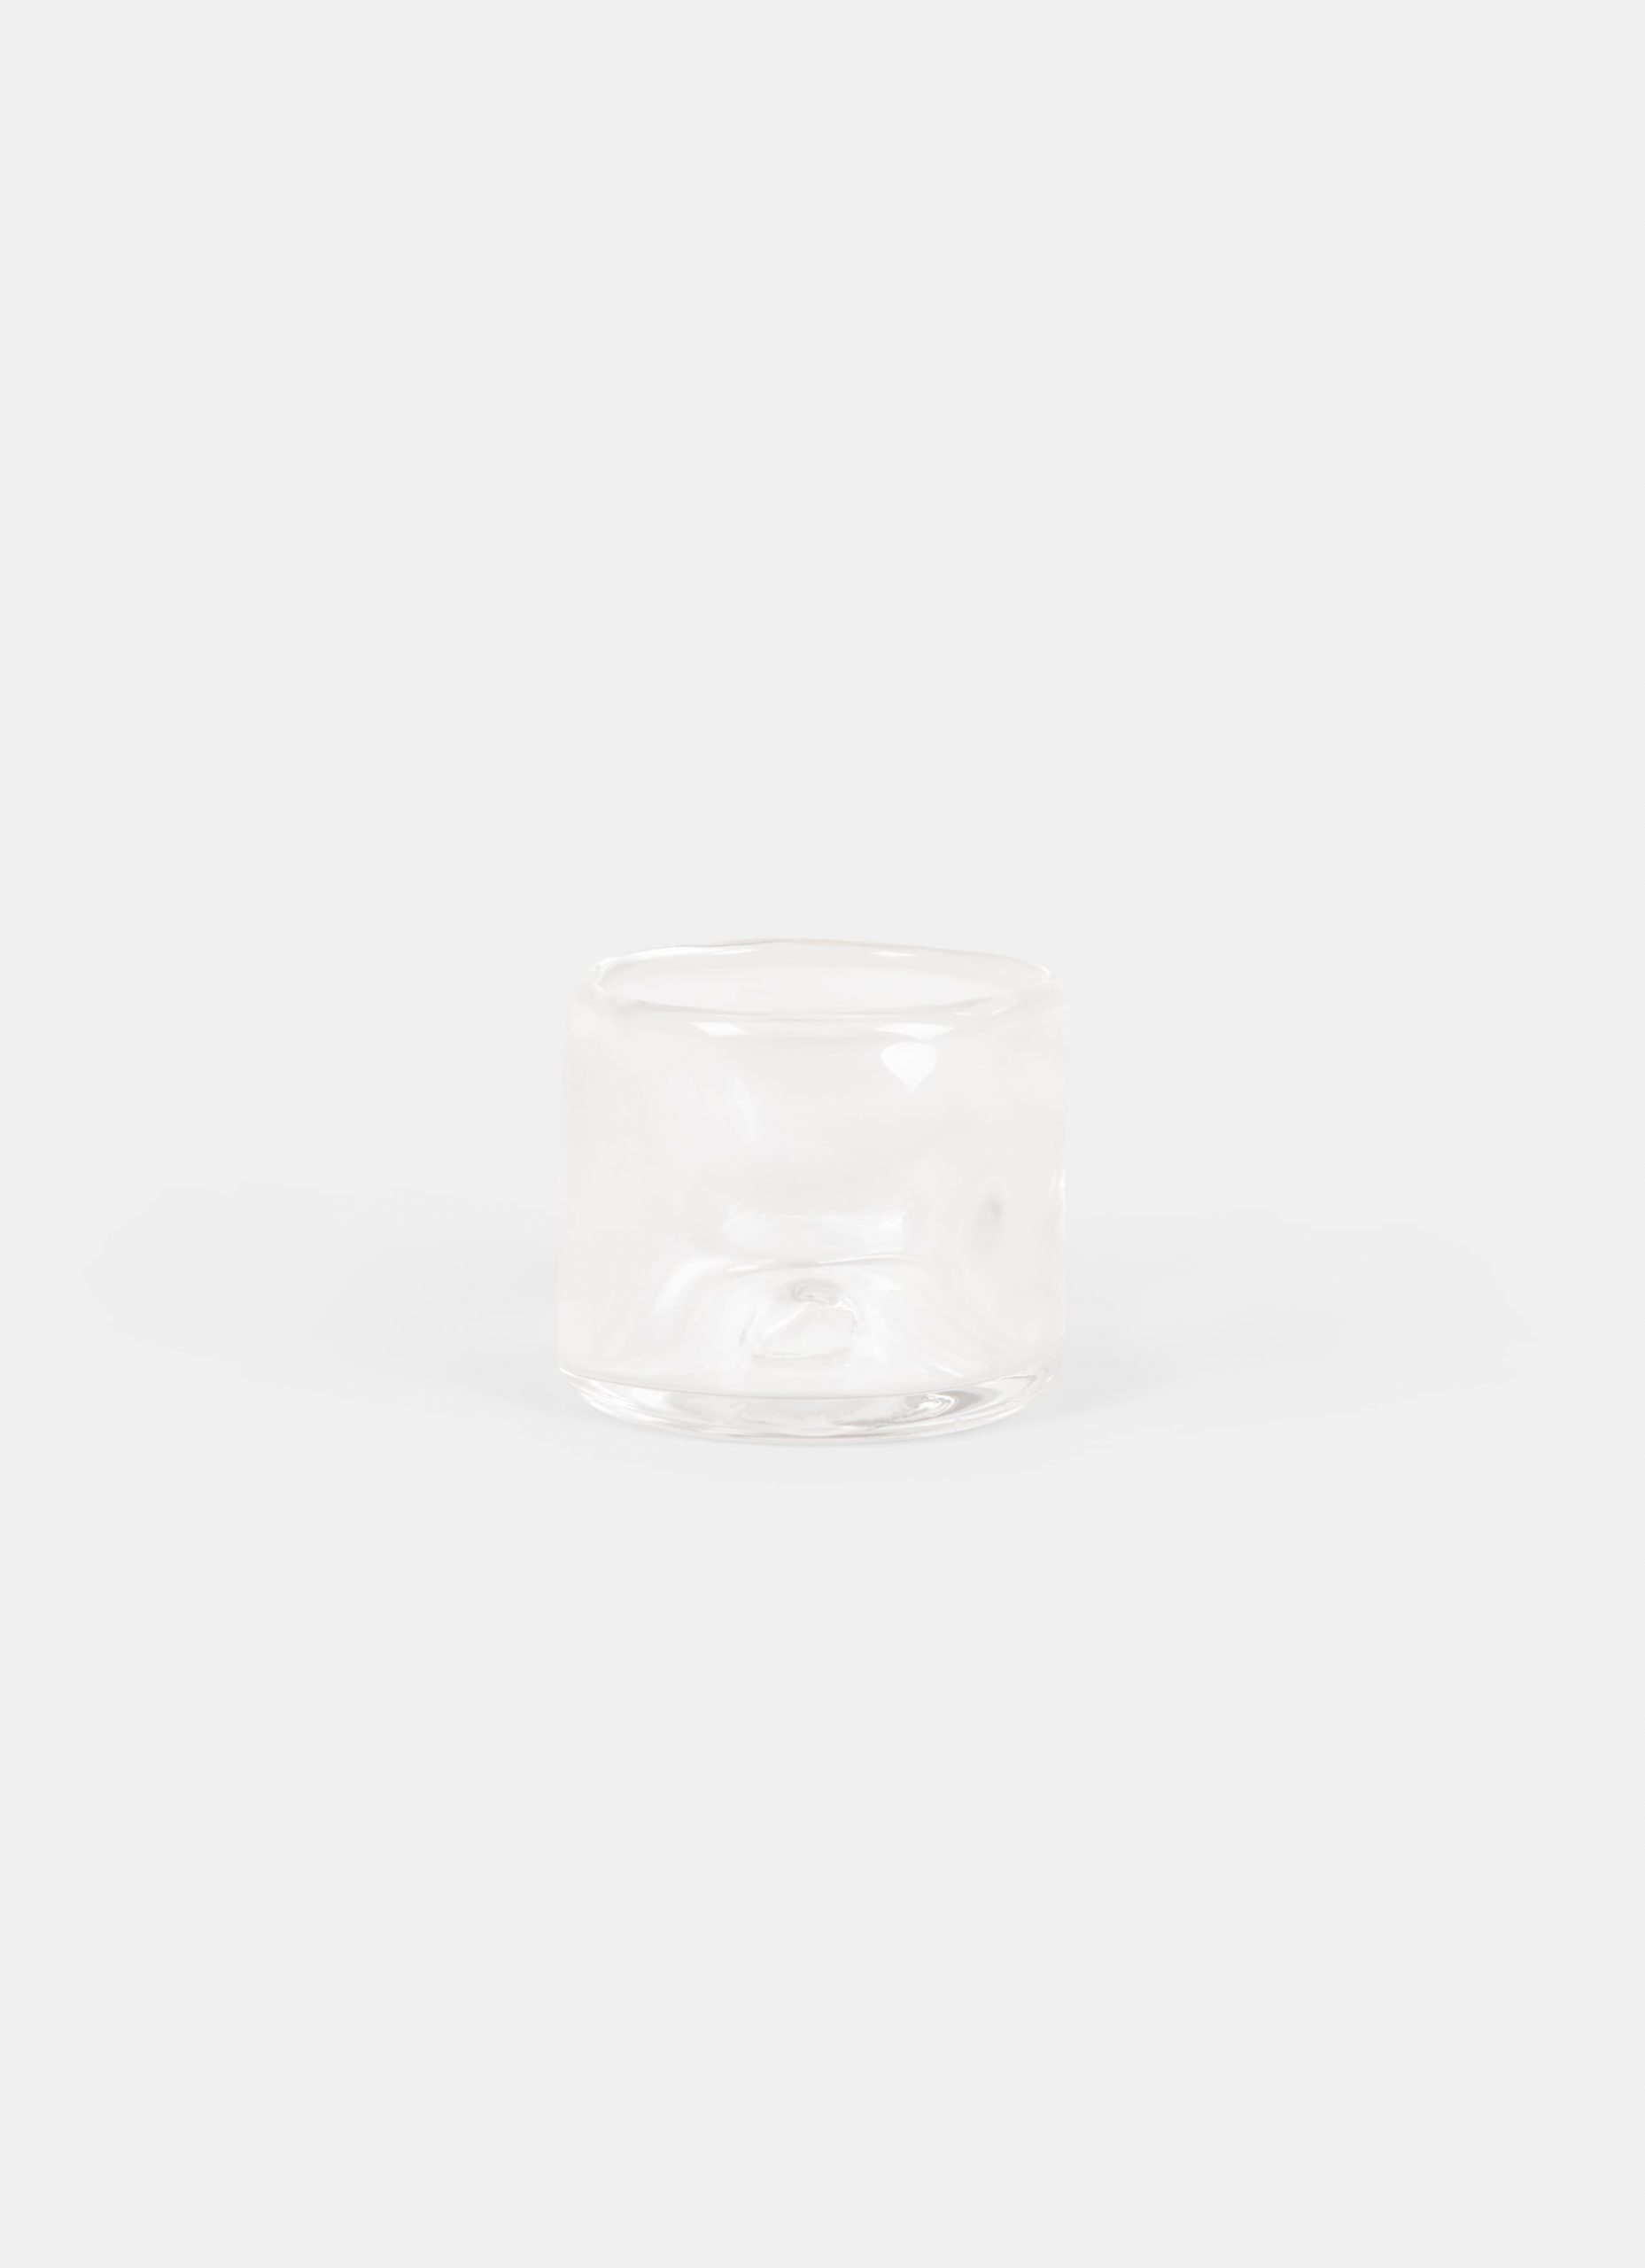 Frama - Glassware - Studio 0405 - Glass wide